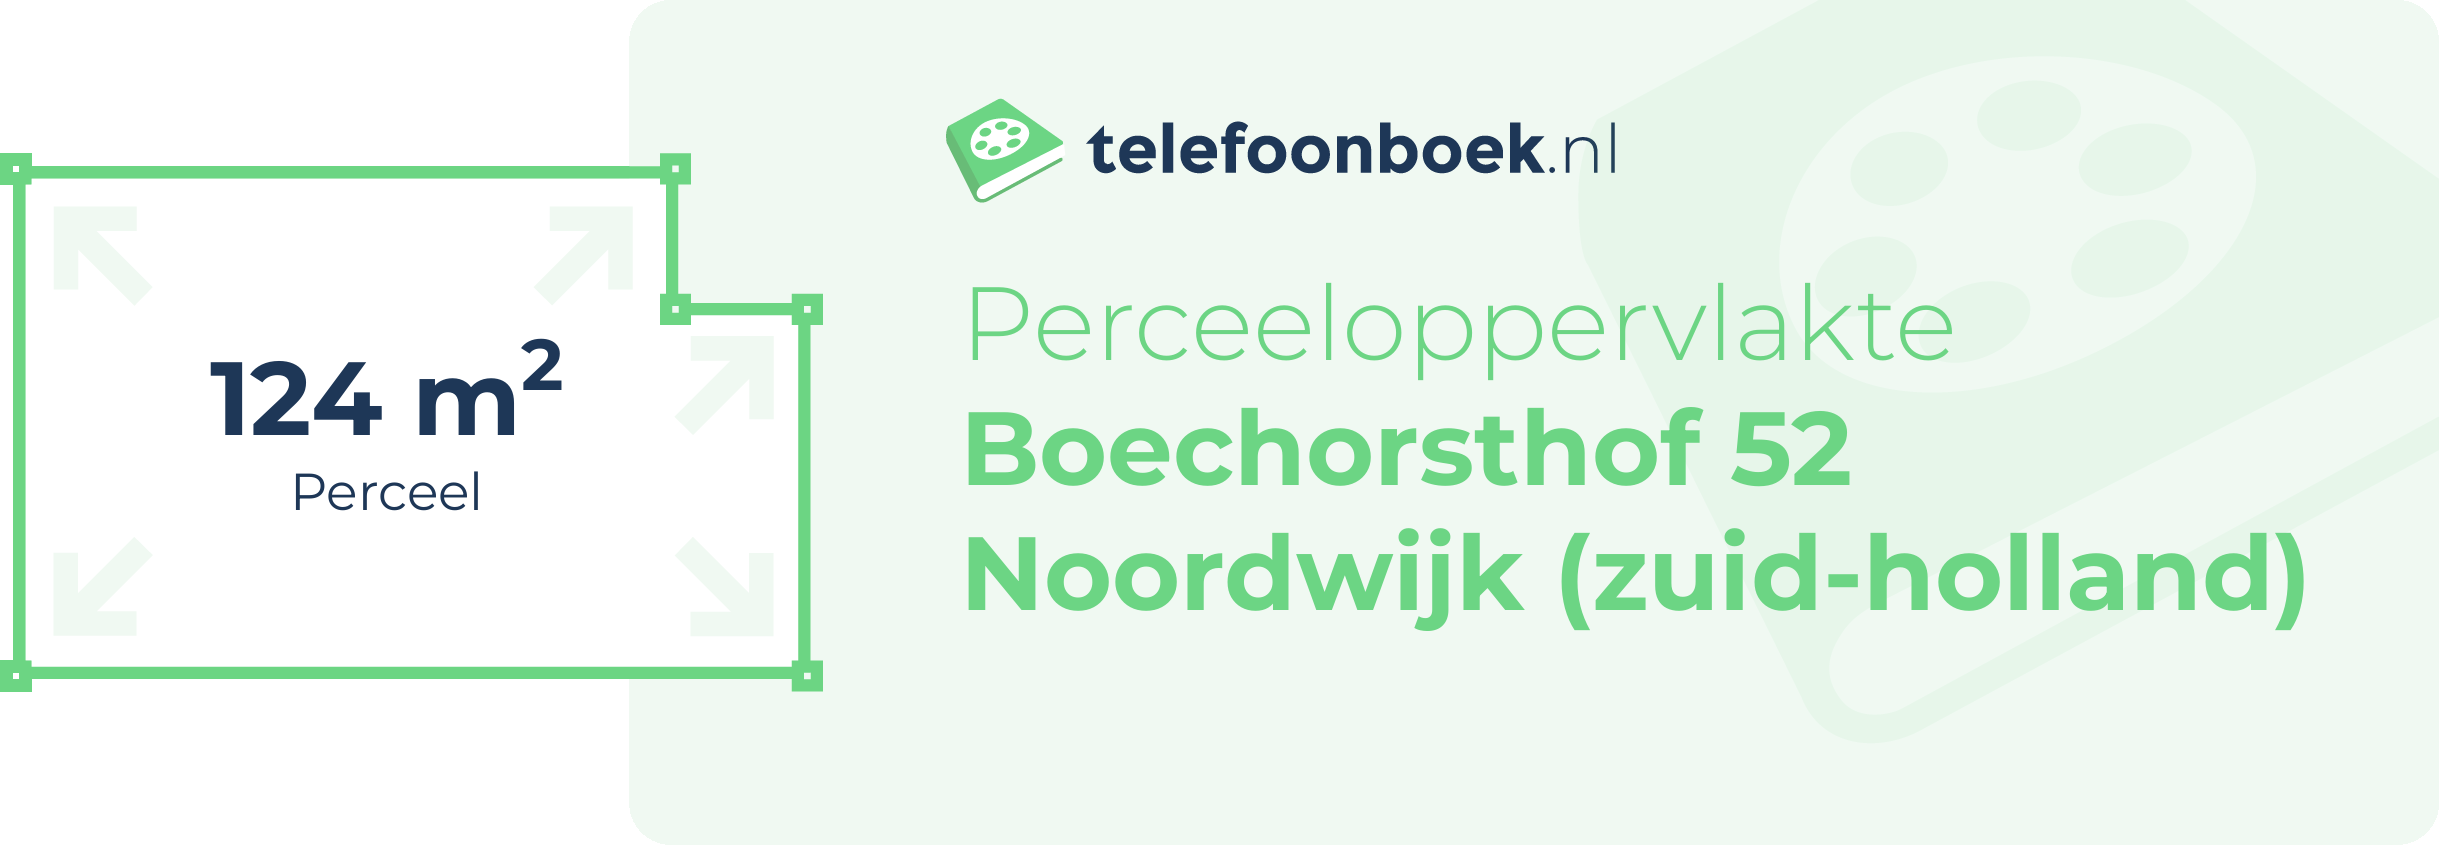 Perceeloppervlakte Boechorsthof 52 Noordwijk (Zuid-Holland)